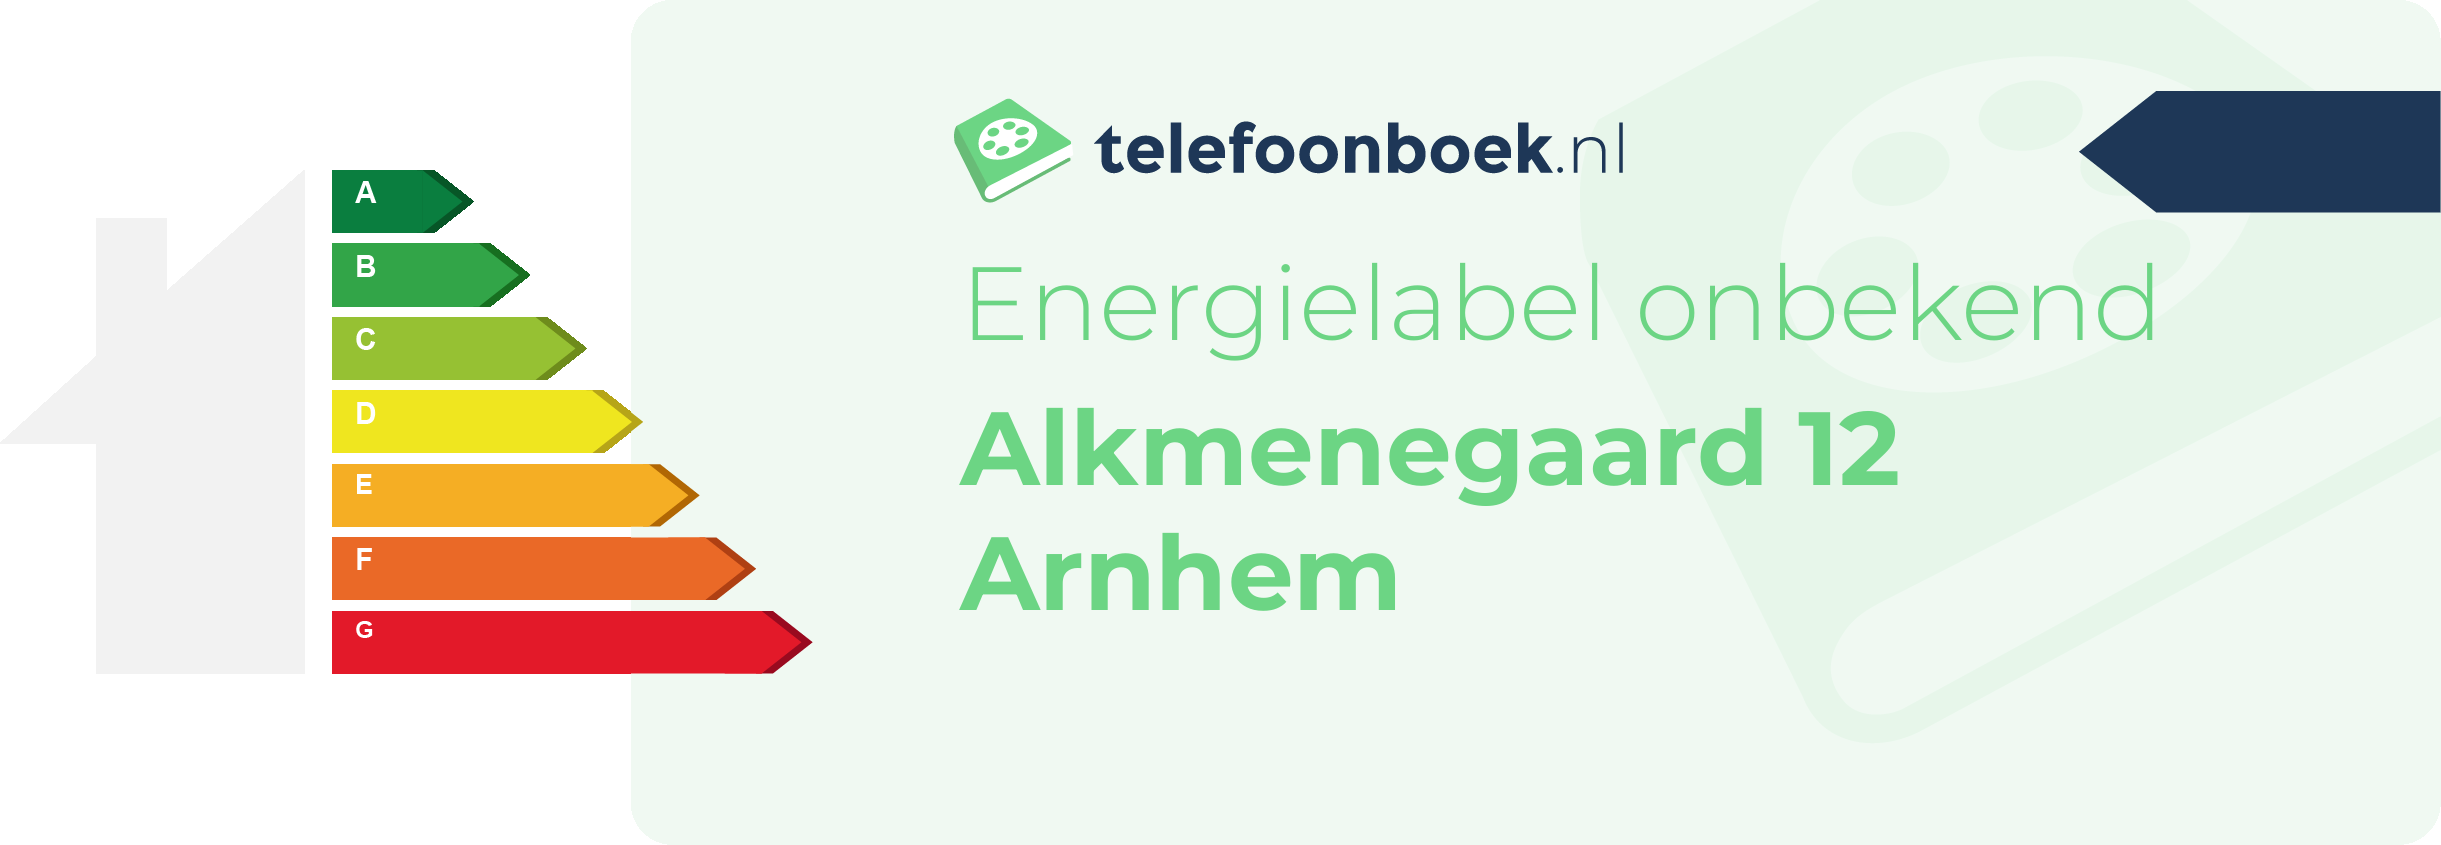 Energielabel Alkmenegaard 12 Arnhem